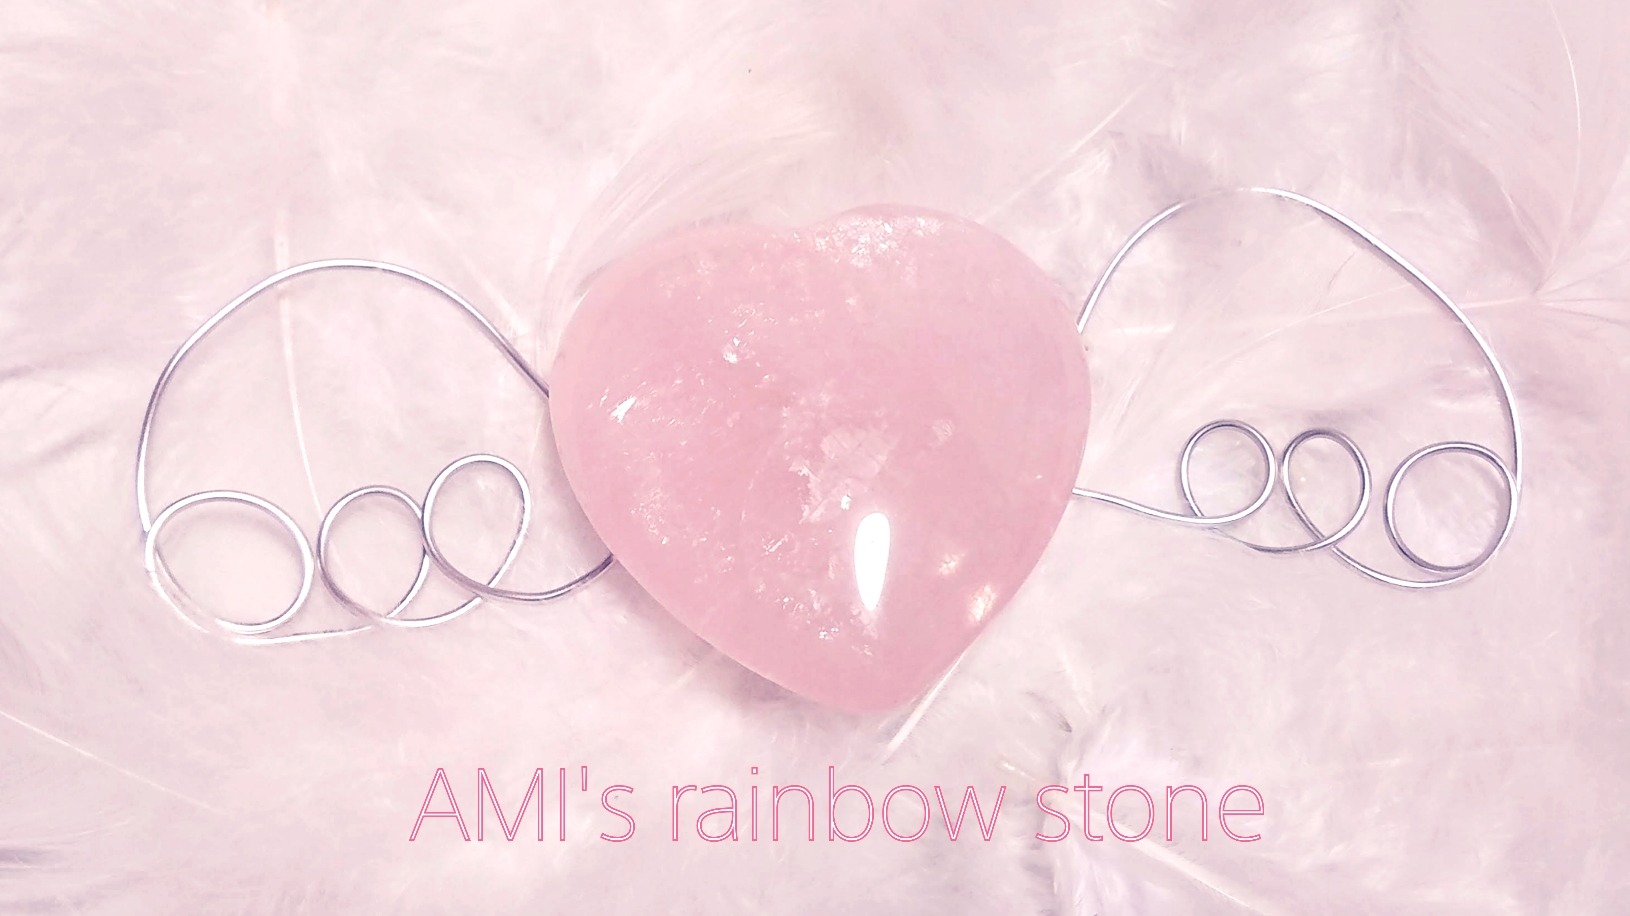 天然石・AMI's rainbow stone